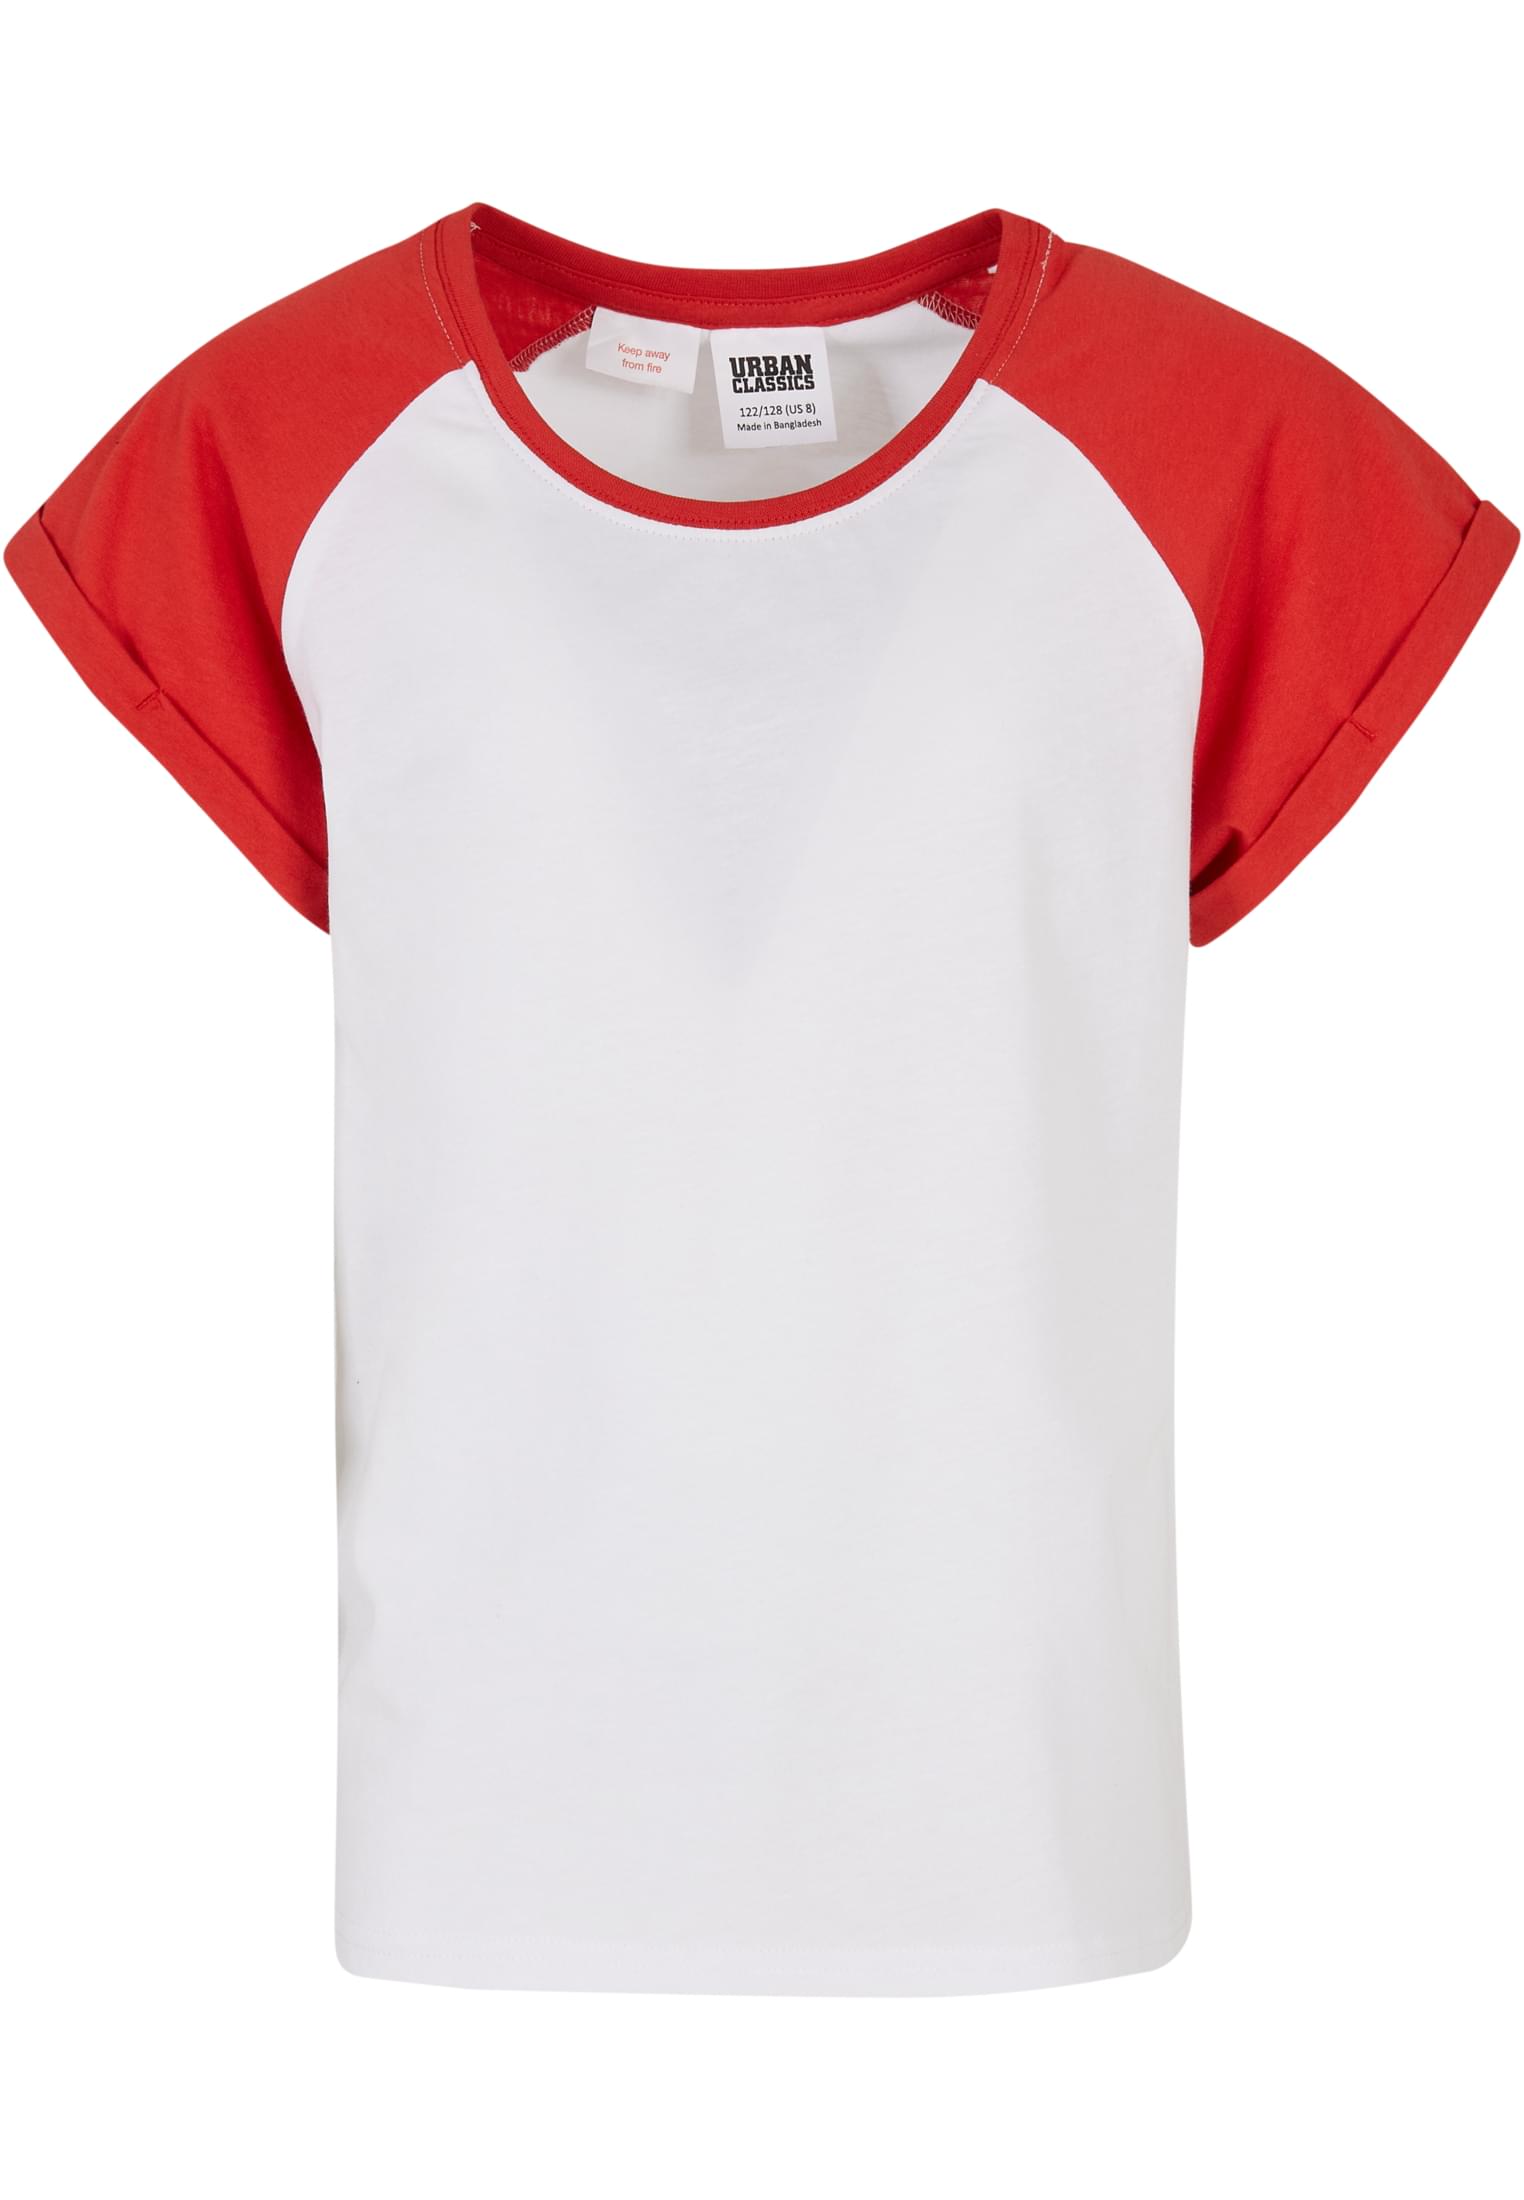 Girls' contrasting raglan t-shirt white/large